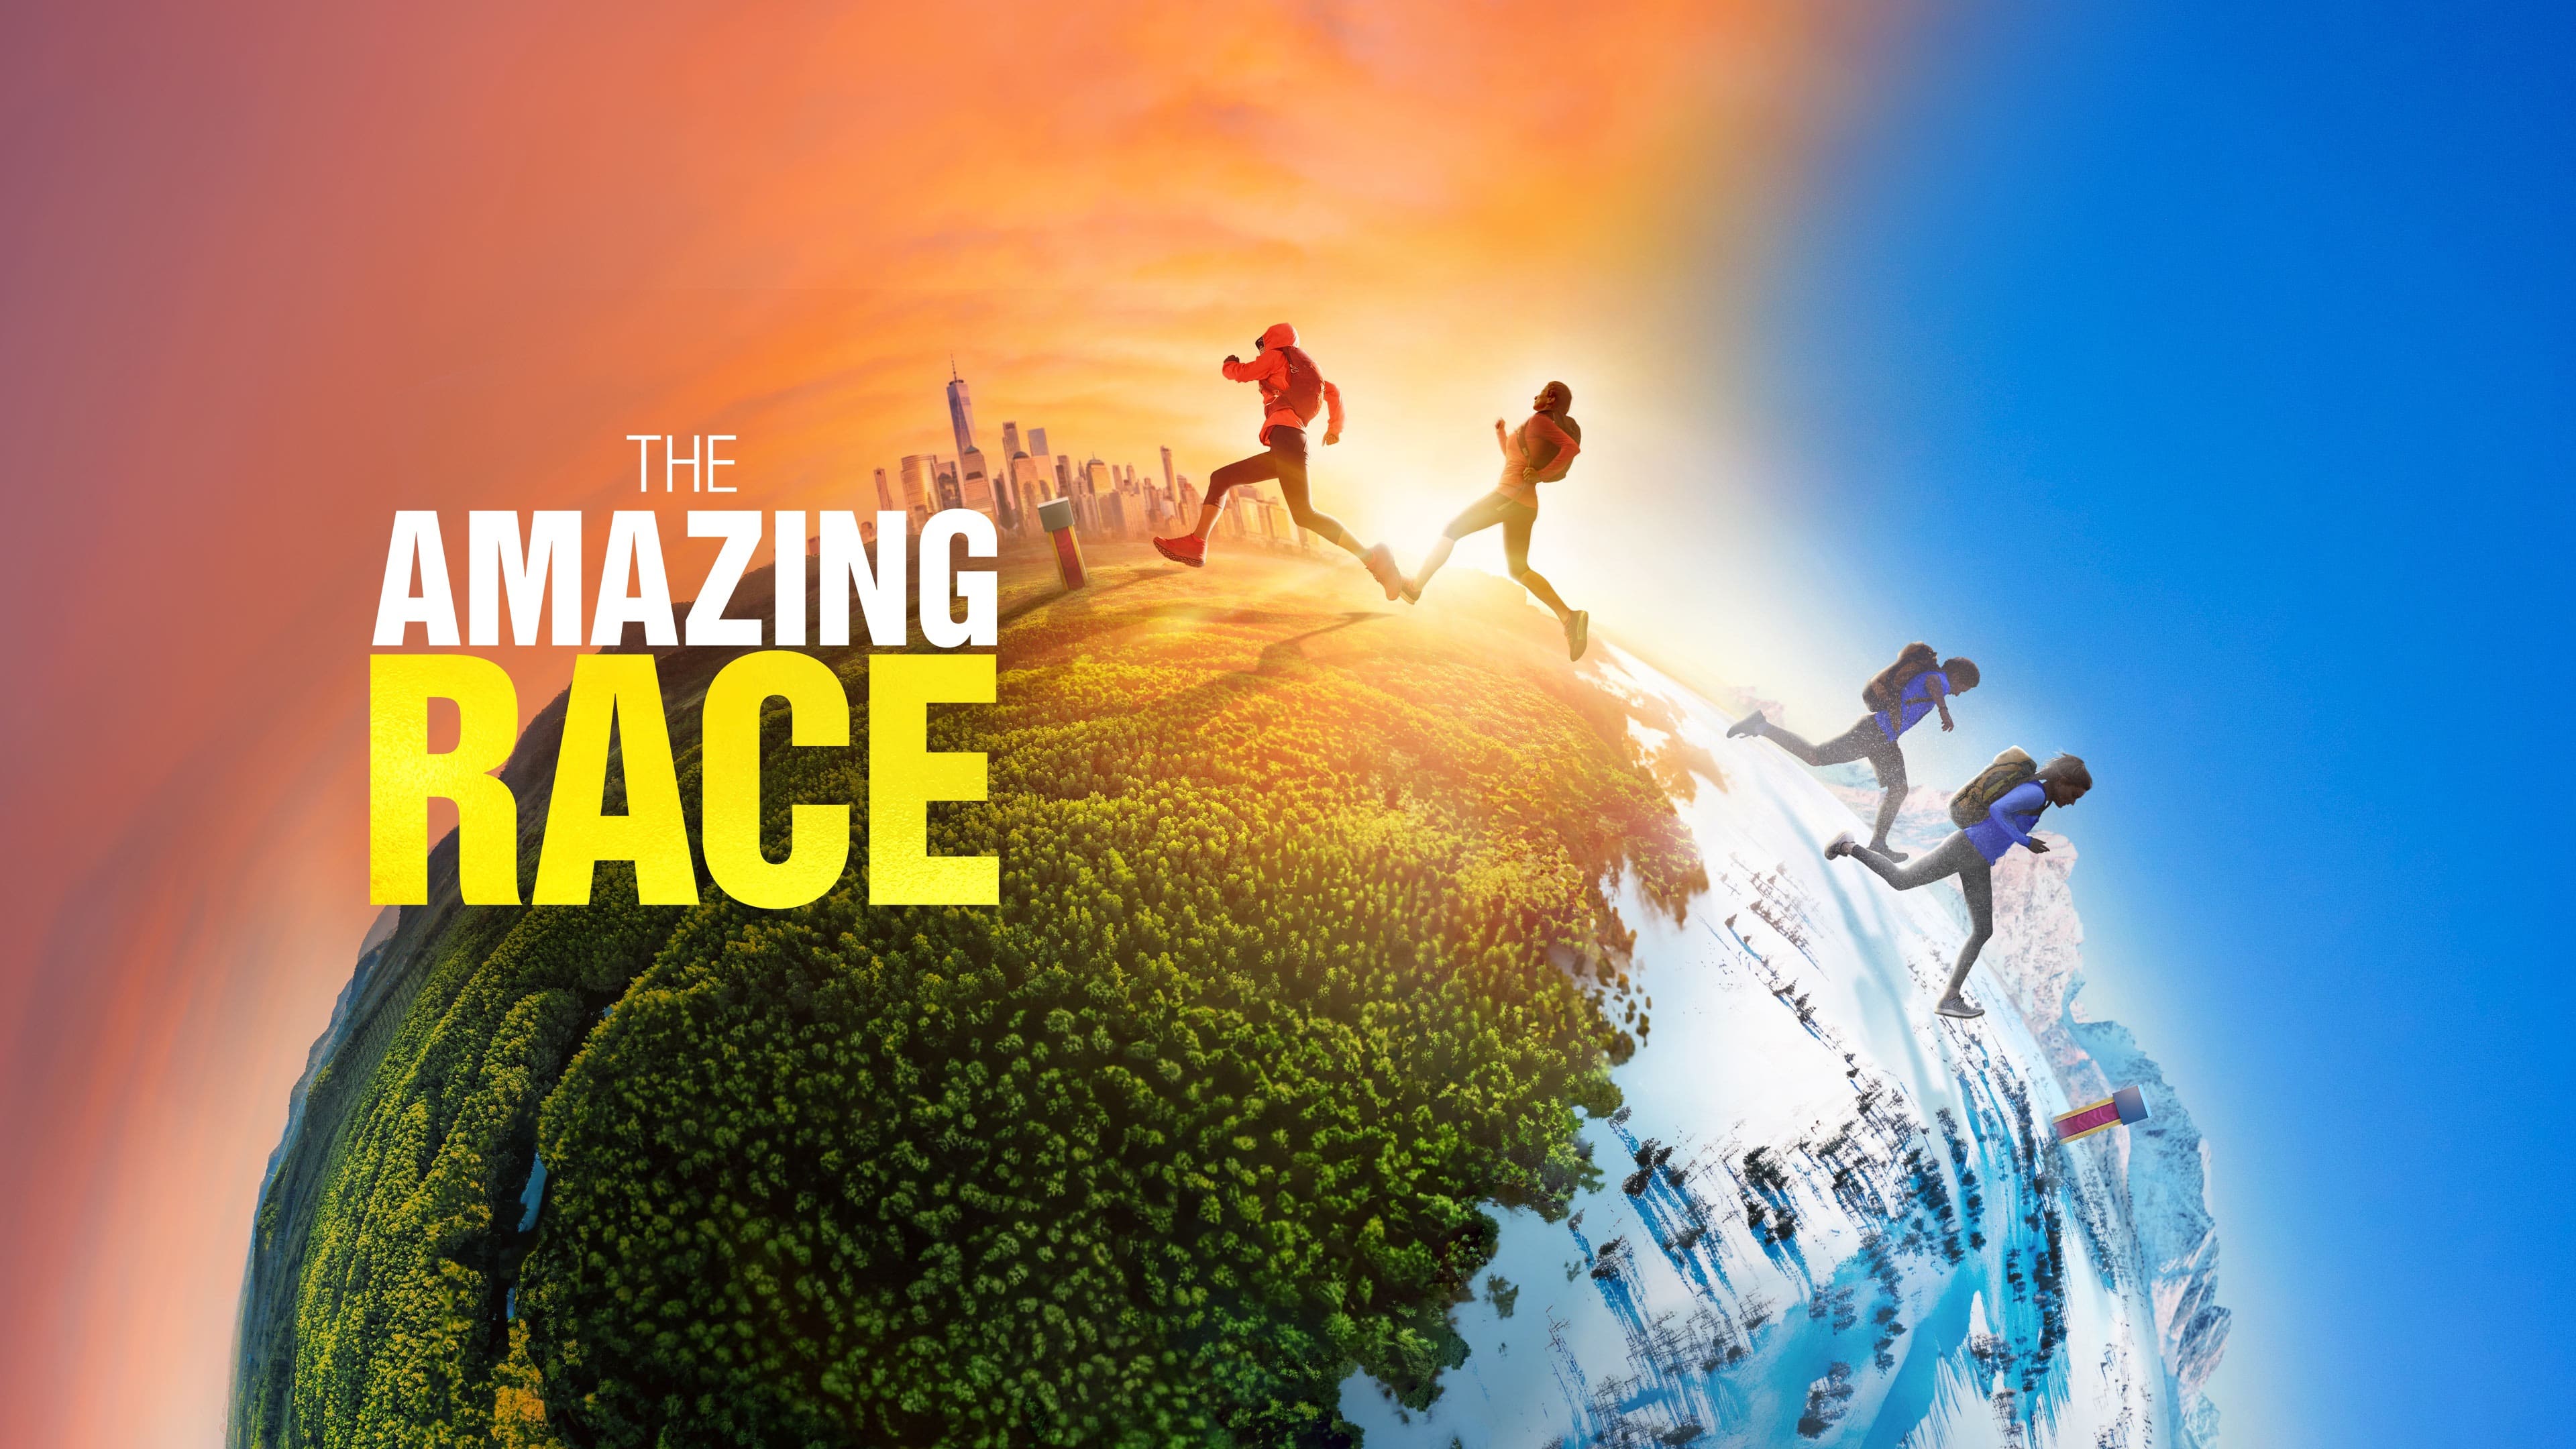 The Amazing Race - Season 15